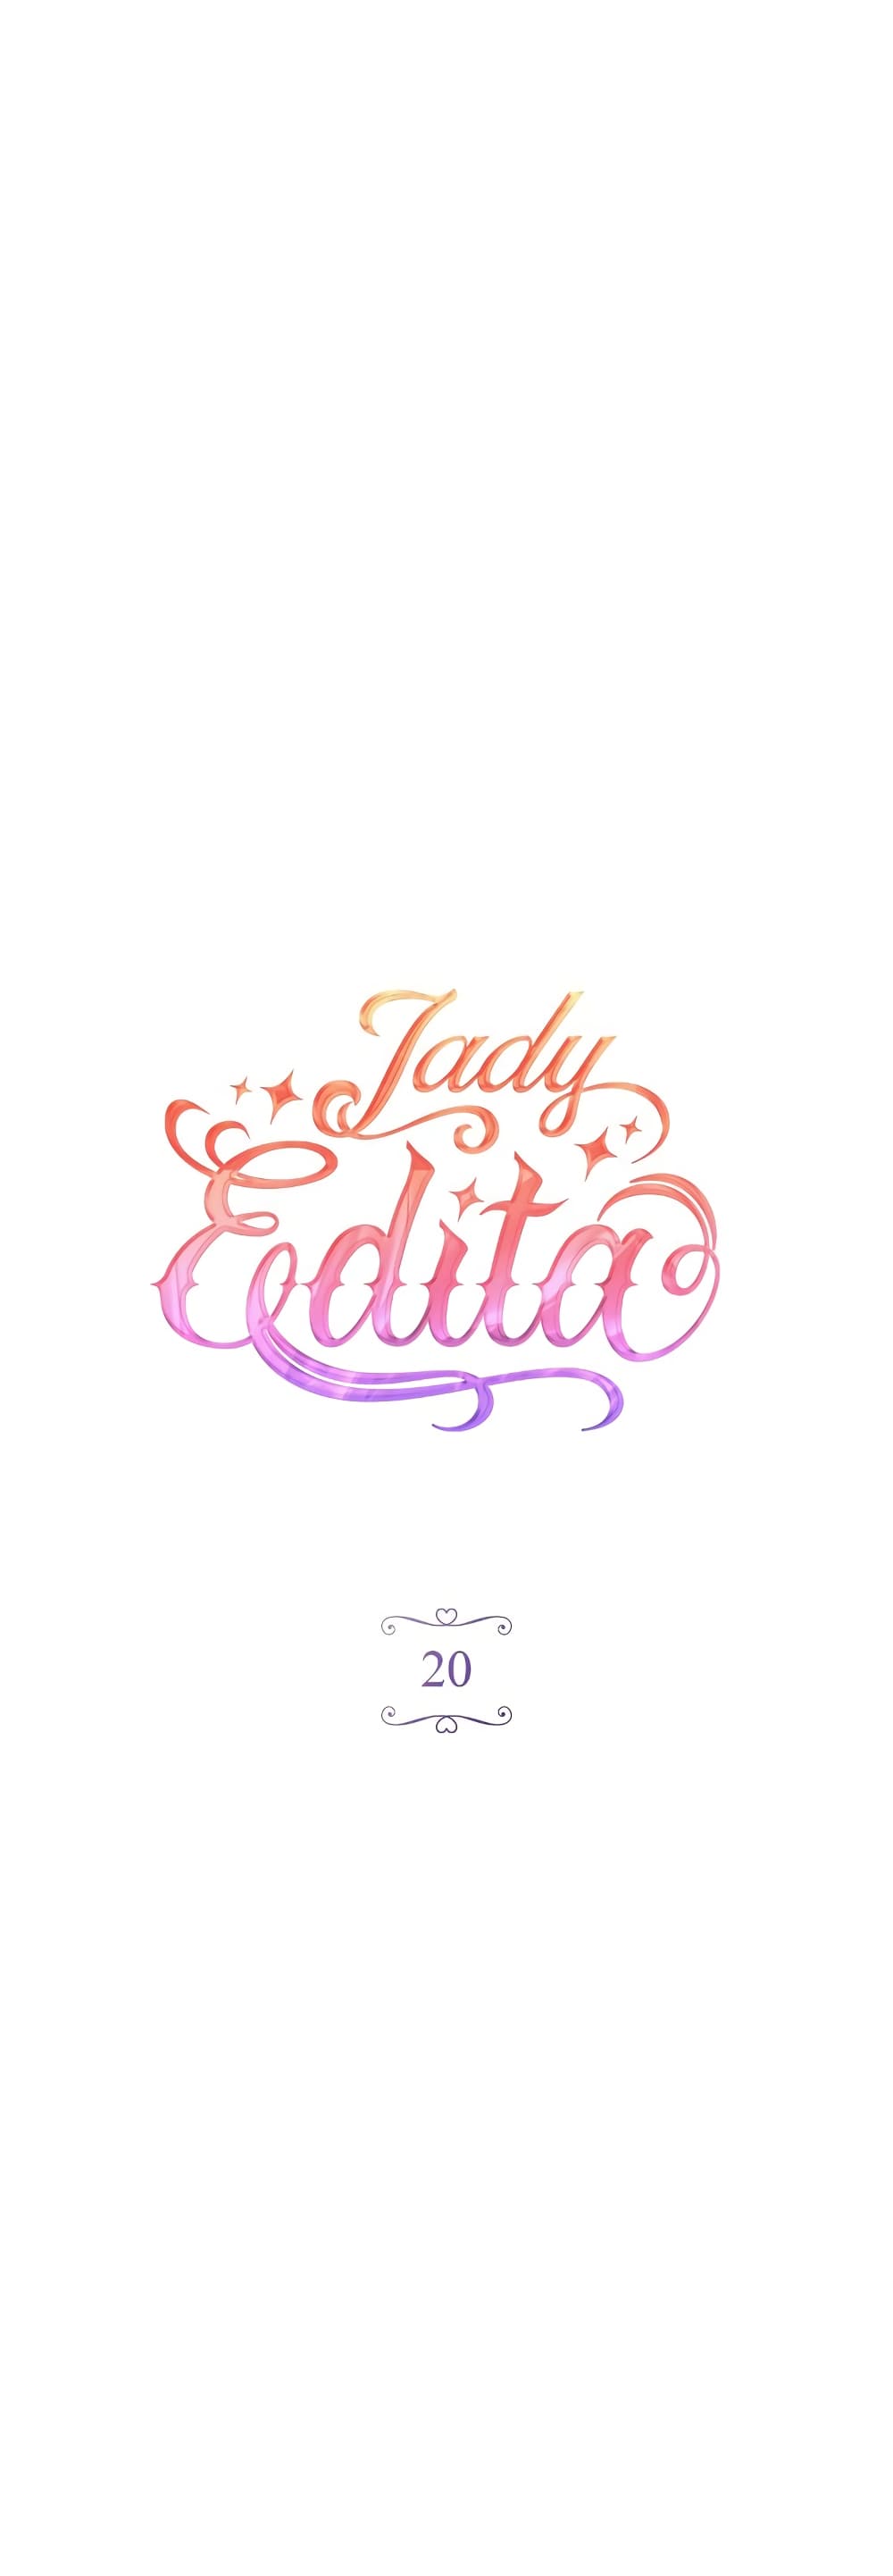 Lady Edita ตอนที่ 20 (21)